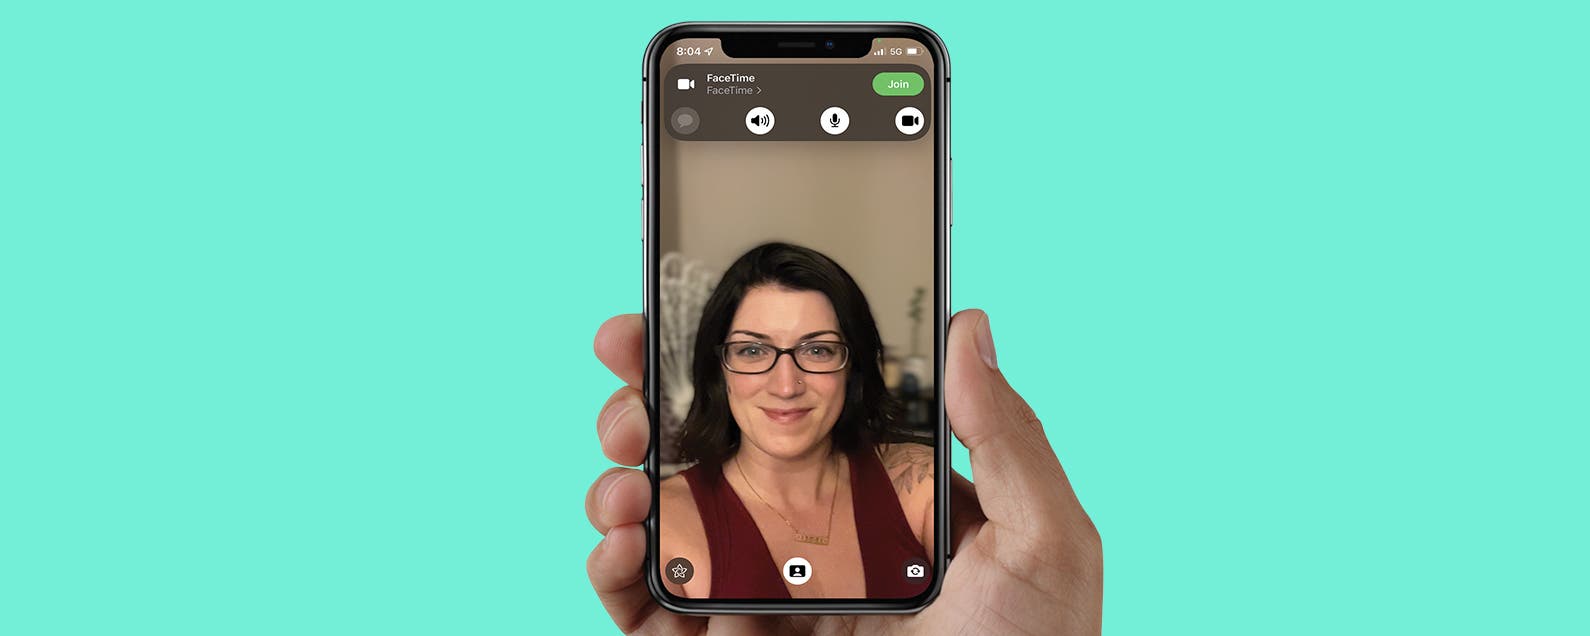 Khám phá chế độ Portrait Mode trên iPhone và iPad - tính năng chụp ảnh chân dung độc đáo của Apple. Với chế độ này, bạn sẽ có được những bức ảnh đầy nghệ thuật, tạo nên sự khác biệt và quyến rũ. Hãy xem thử hình ảnh liên quan để cảm nhận sự đẹp mắt của chế độ này ngay hôm nay.